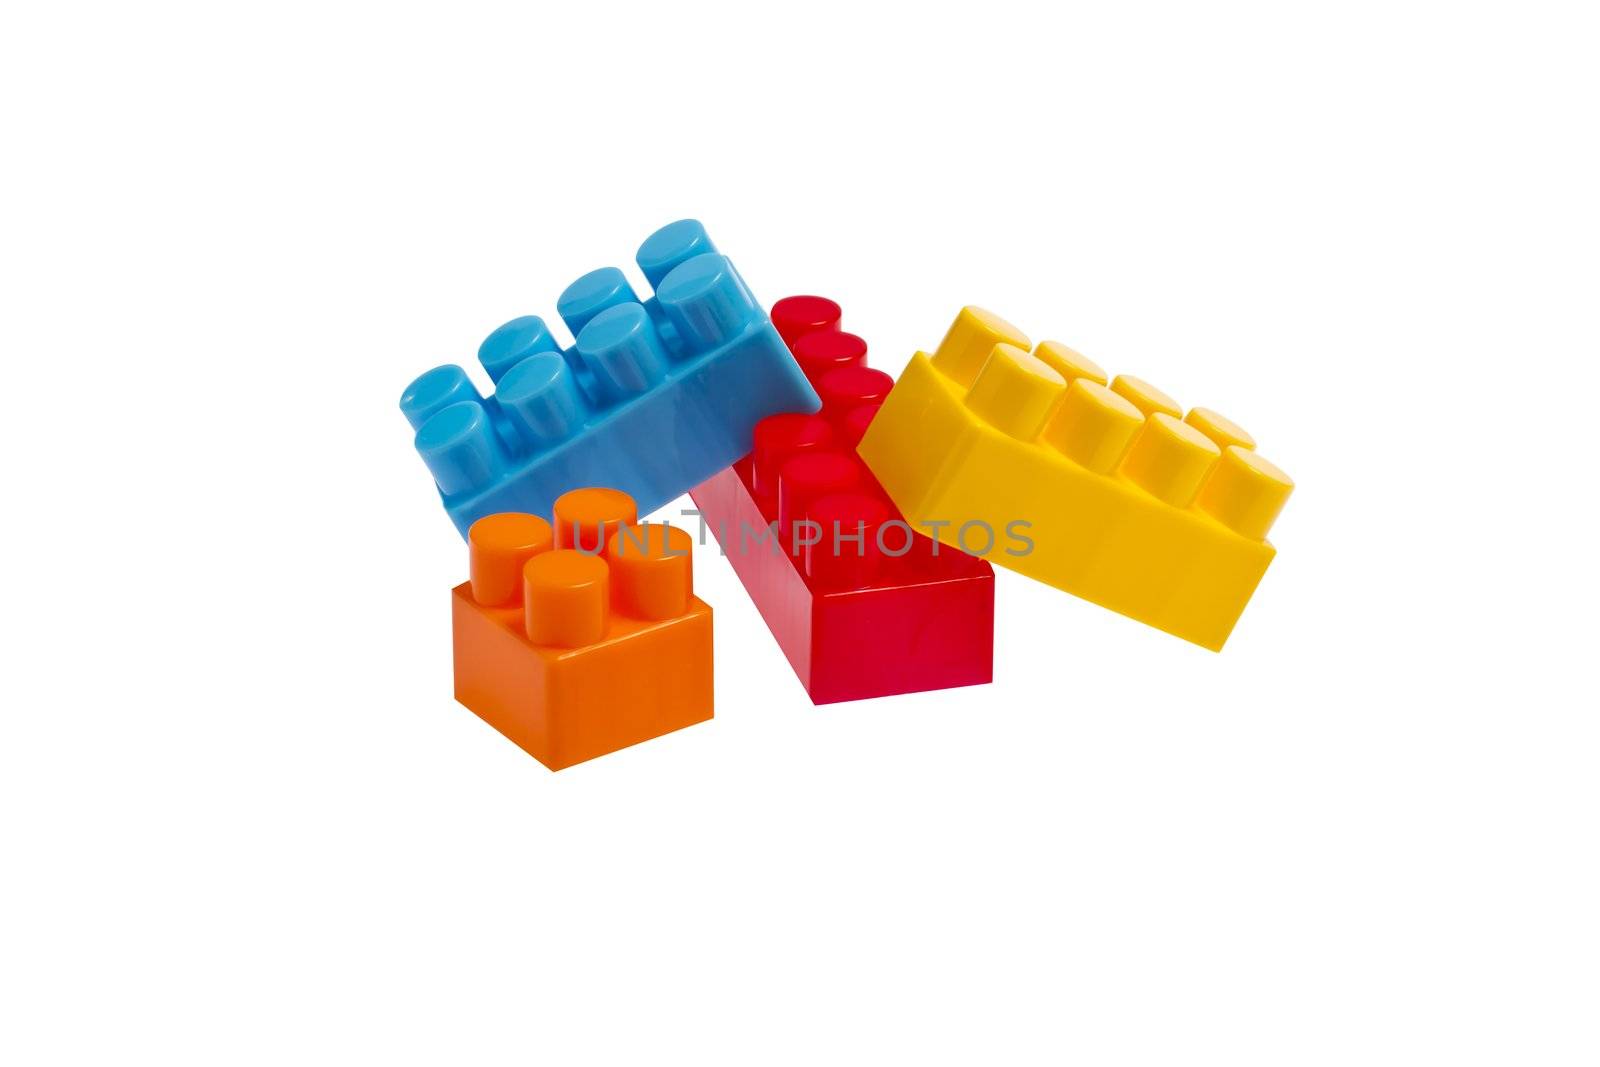 lego plastic toy blocks on white backgroud